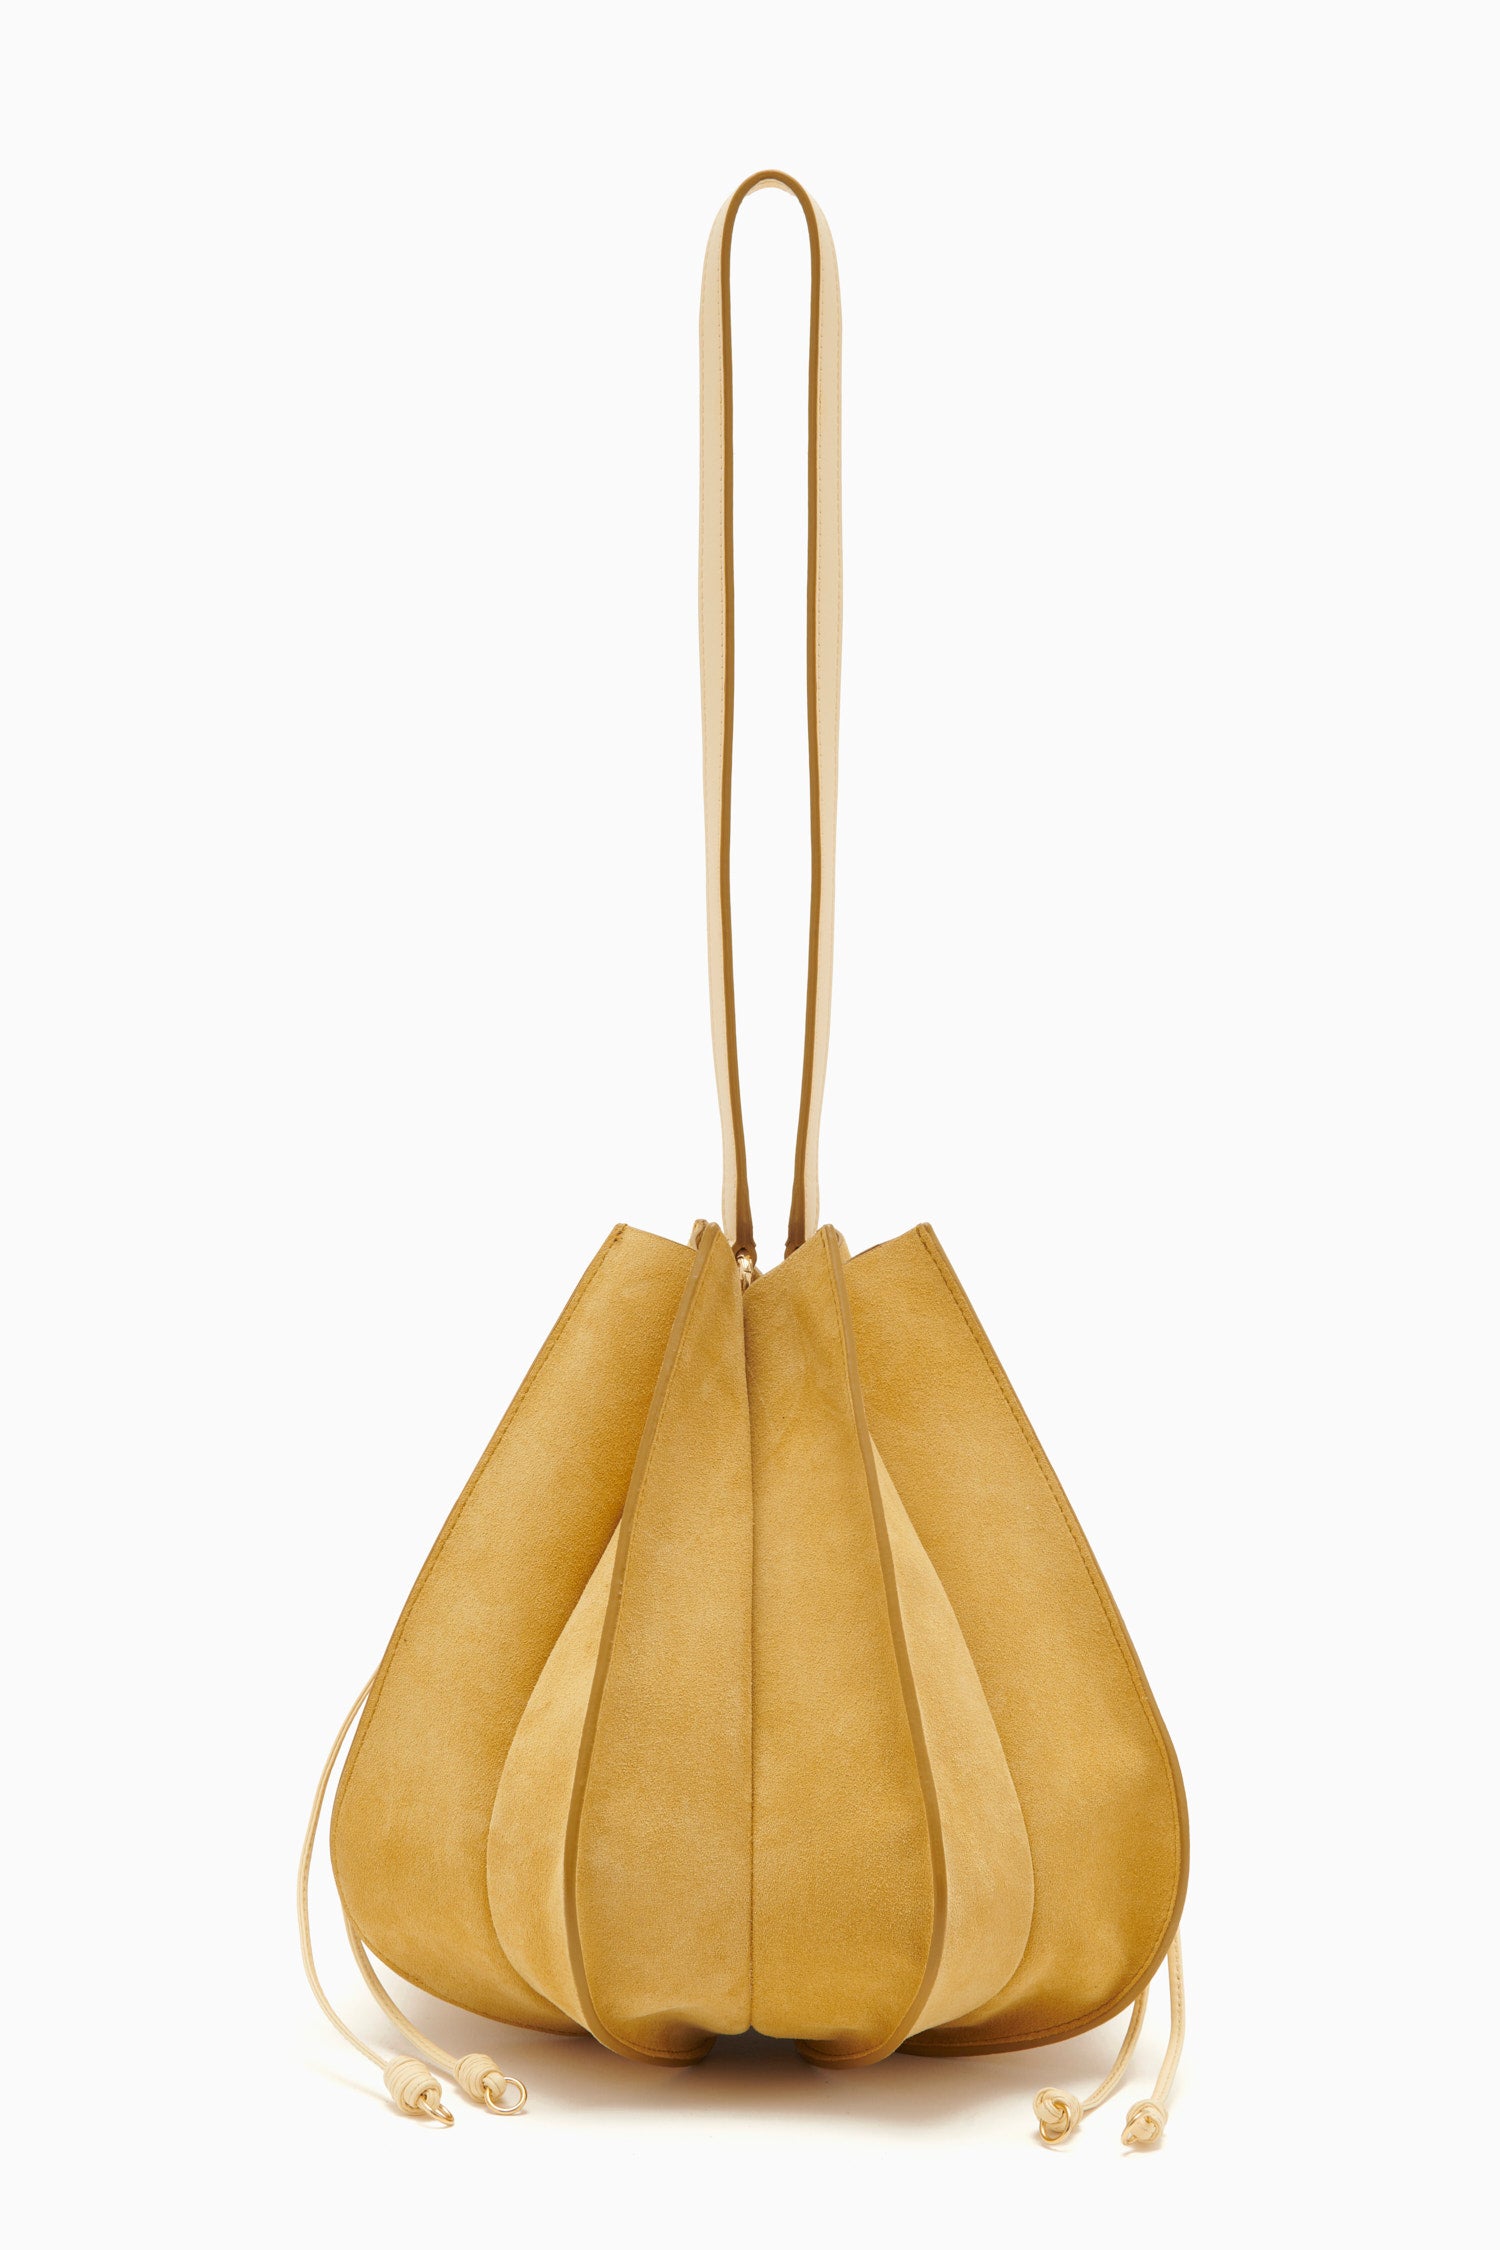 Tulip Vintage Leather Bucket Bag – YONDER BAGS